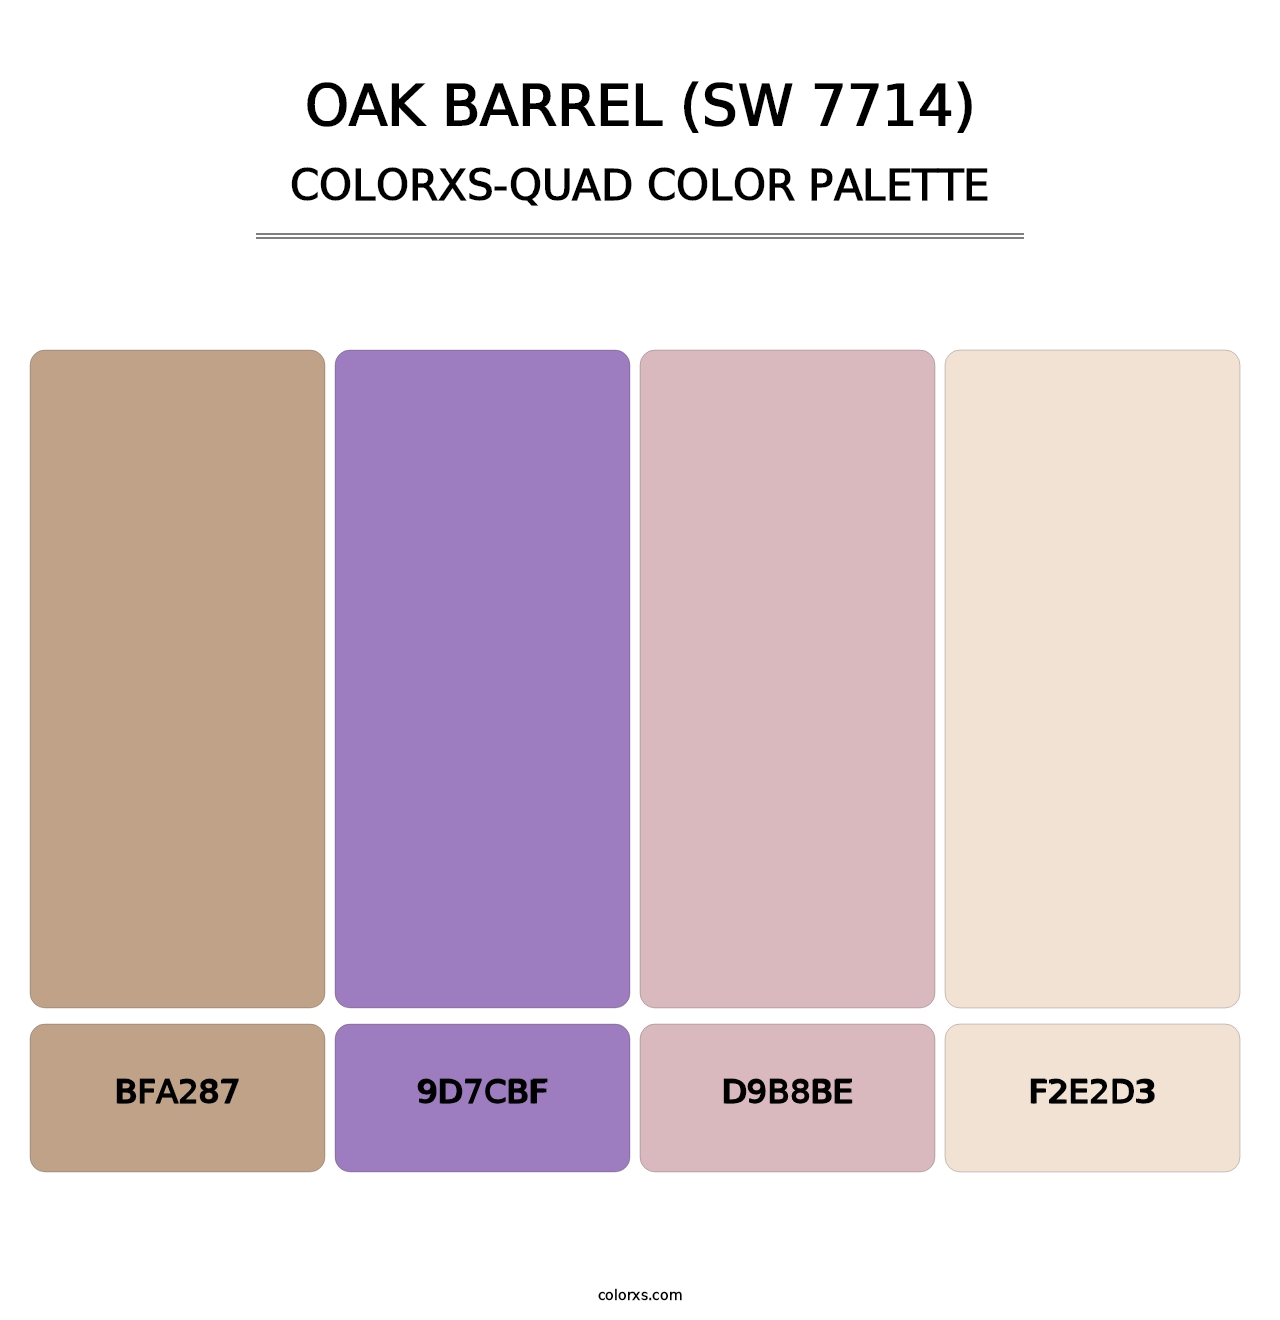 Oak Barrel (SW 7714) - Colorxs Quad Palette